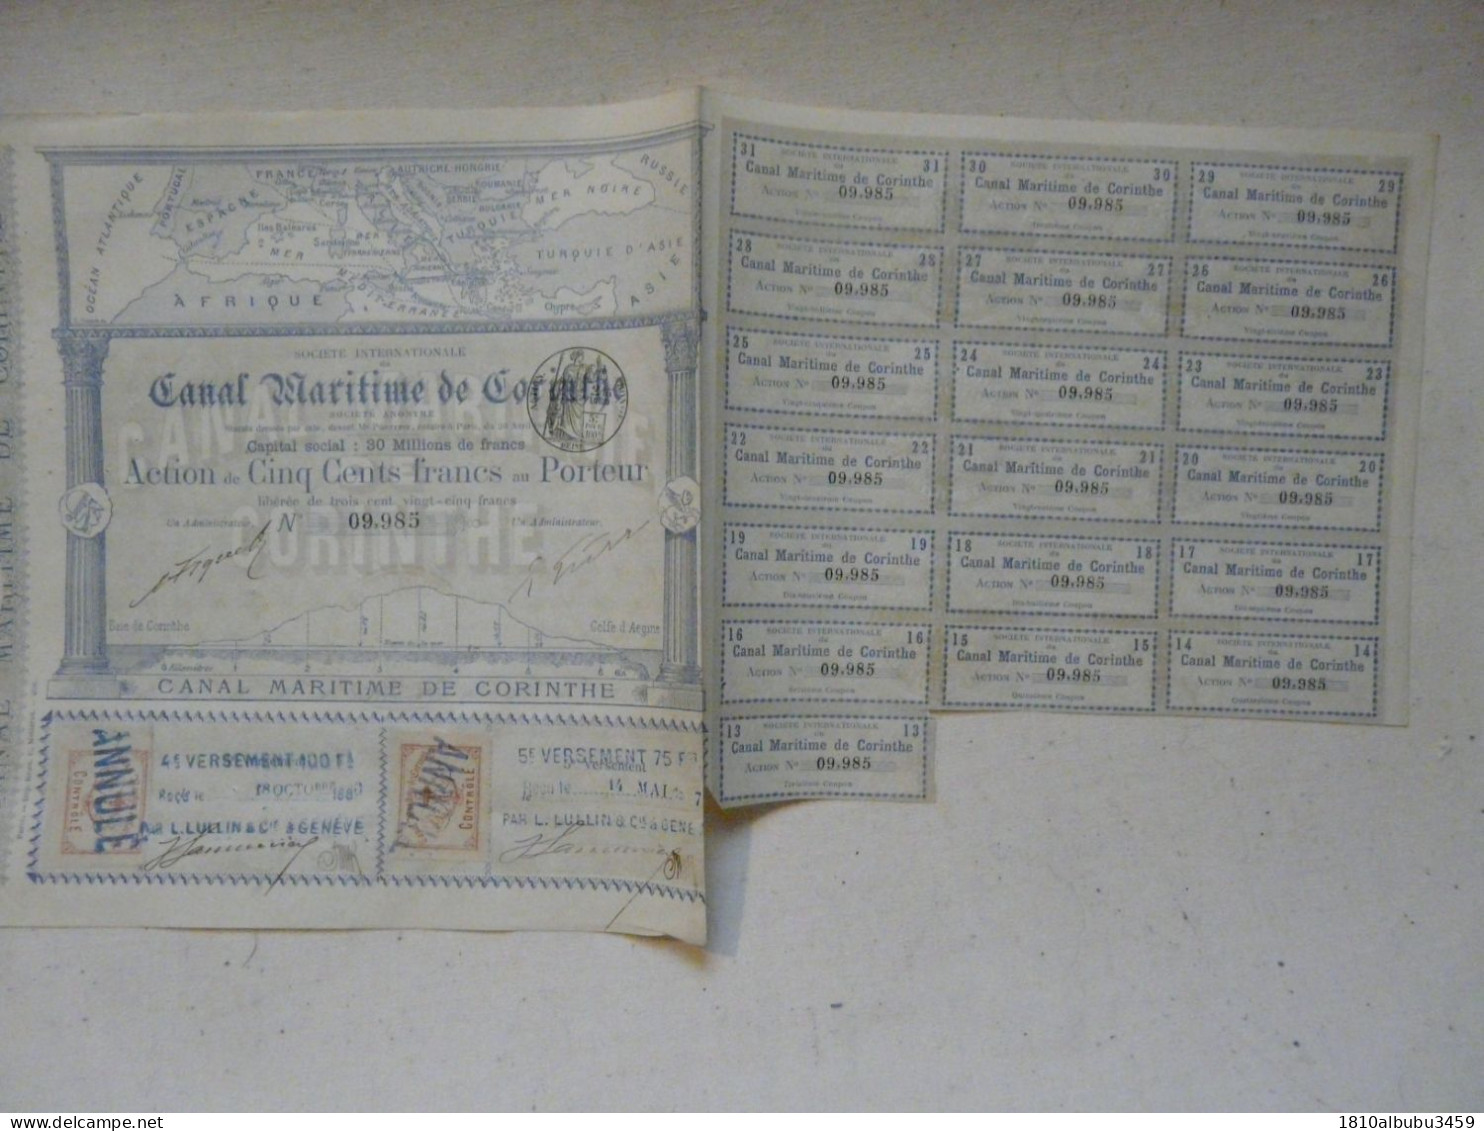 RARE - ACTION DE CINQ CENTS FRANCS - SOCIETE INTERNATIONALE DU CANAL MARITIME DE CORINTHE 1886-1887 - Navigazione